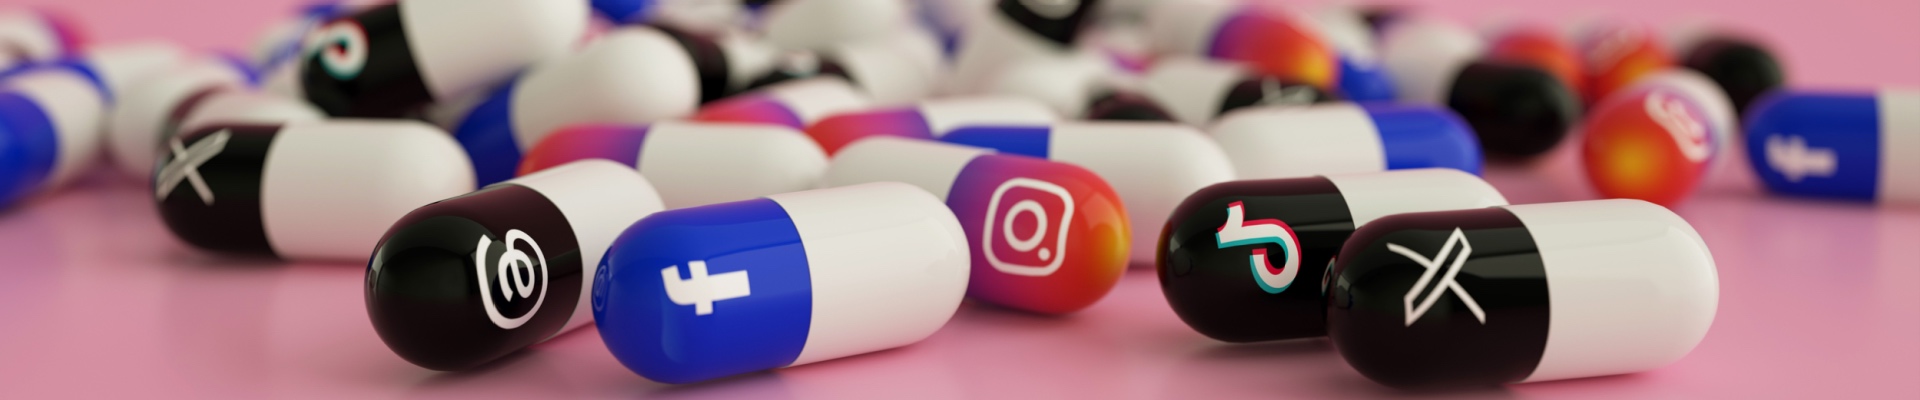 various popular social media logos as drug pills scattered on pink floor. social media addiction concept